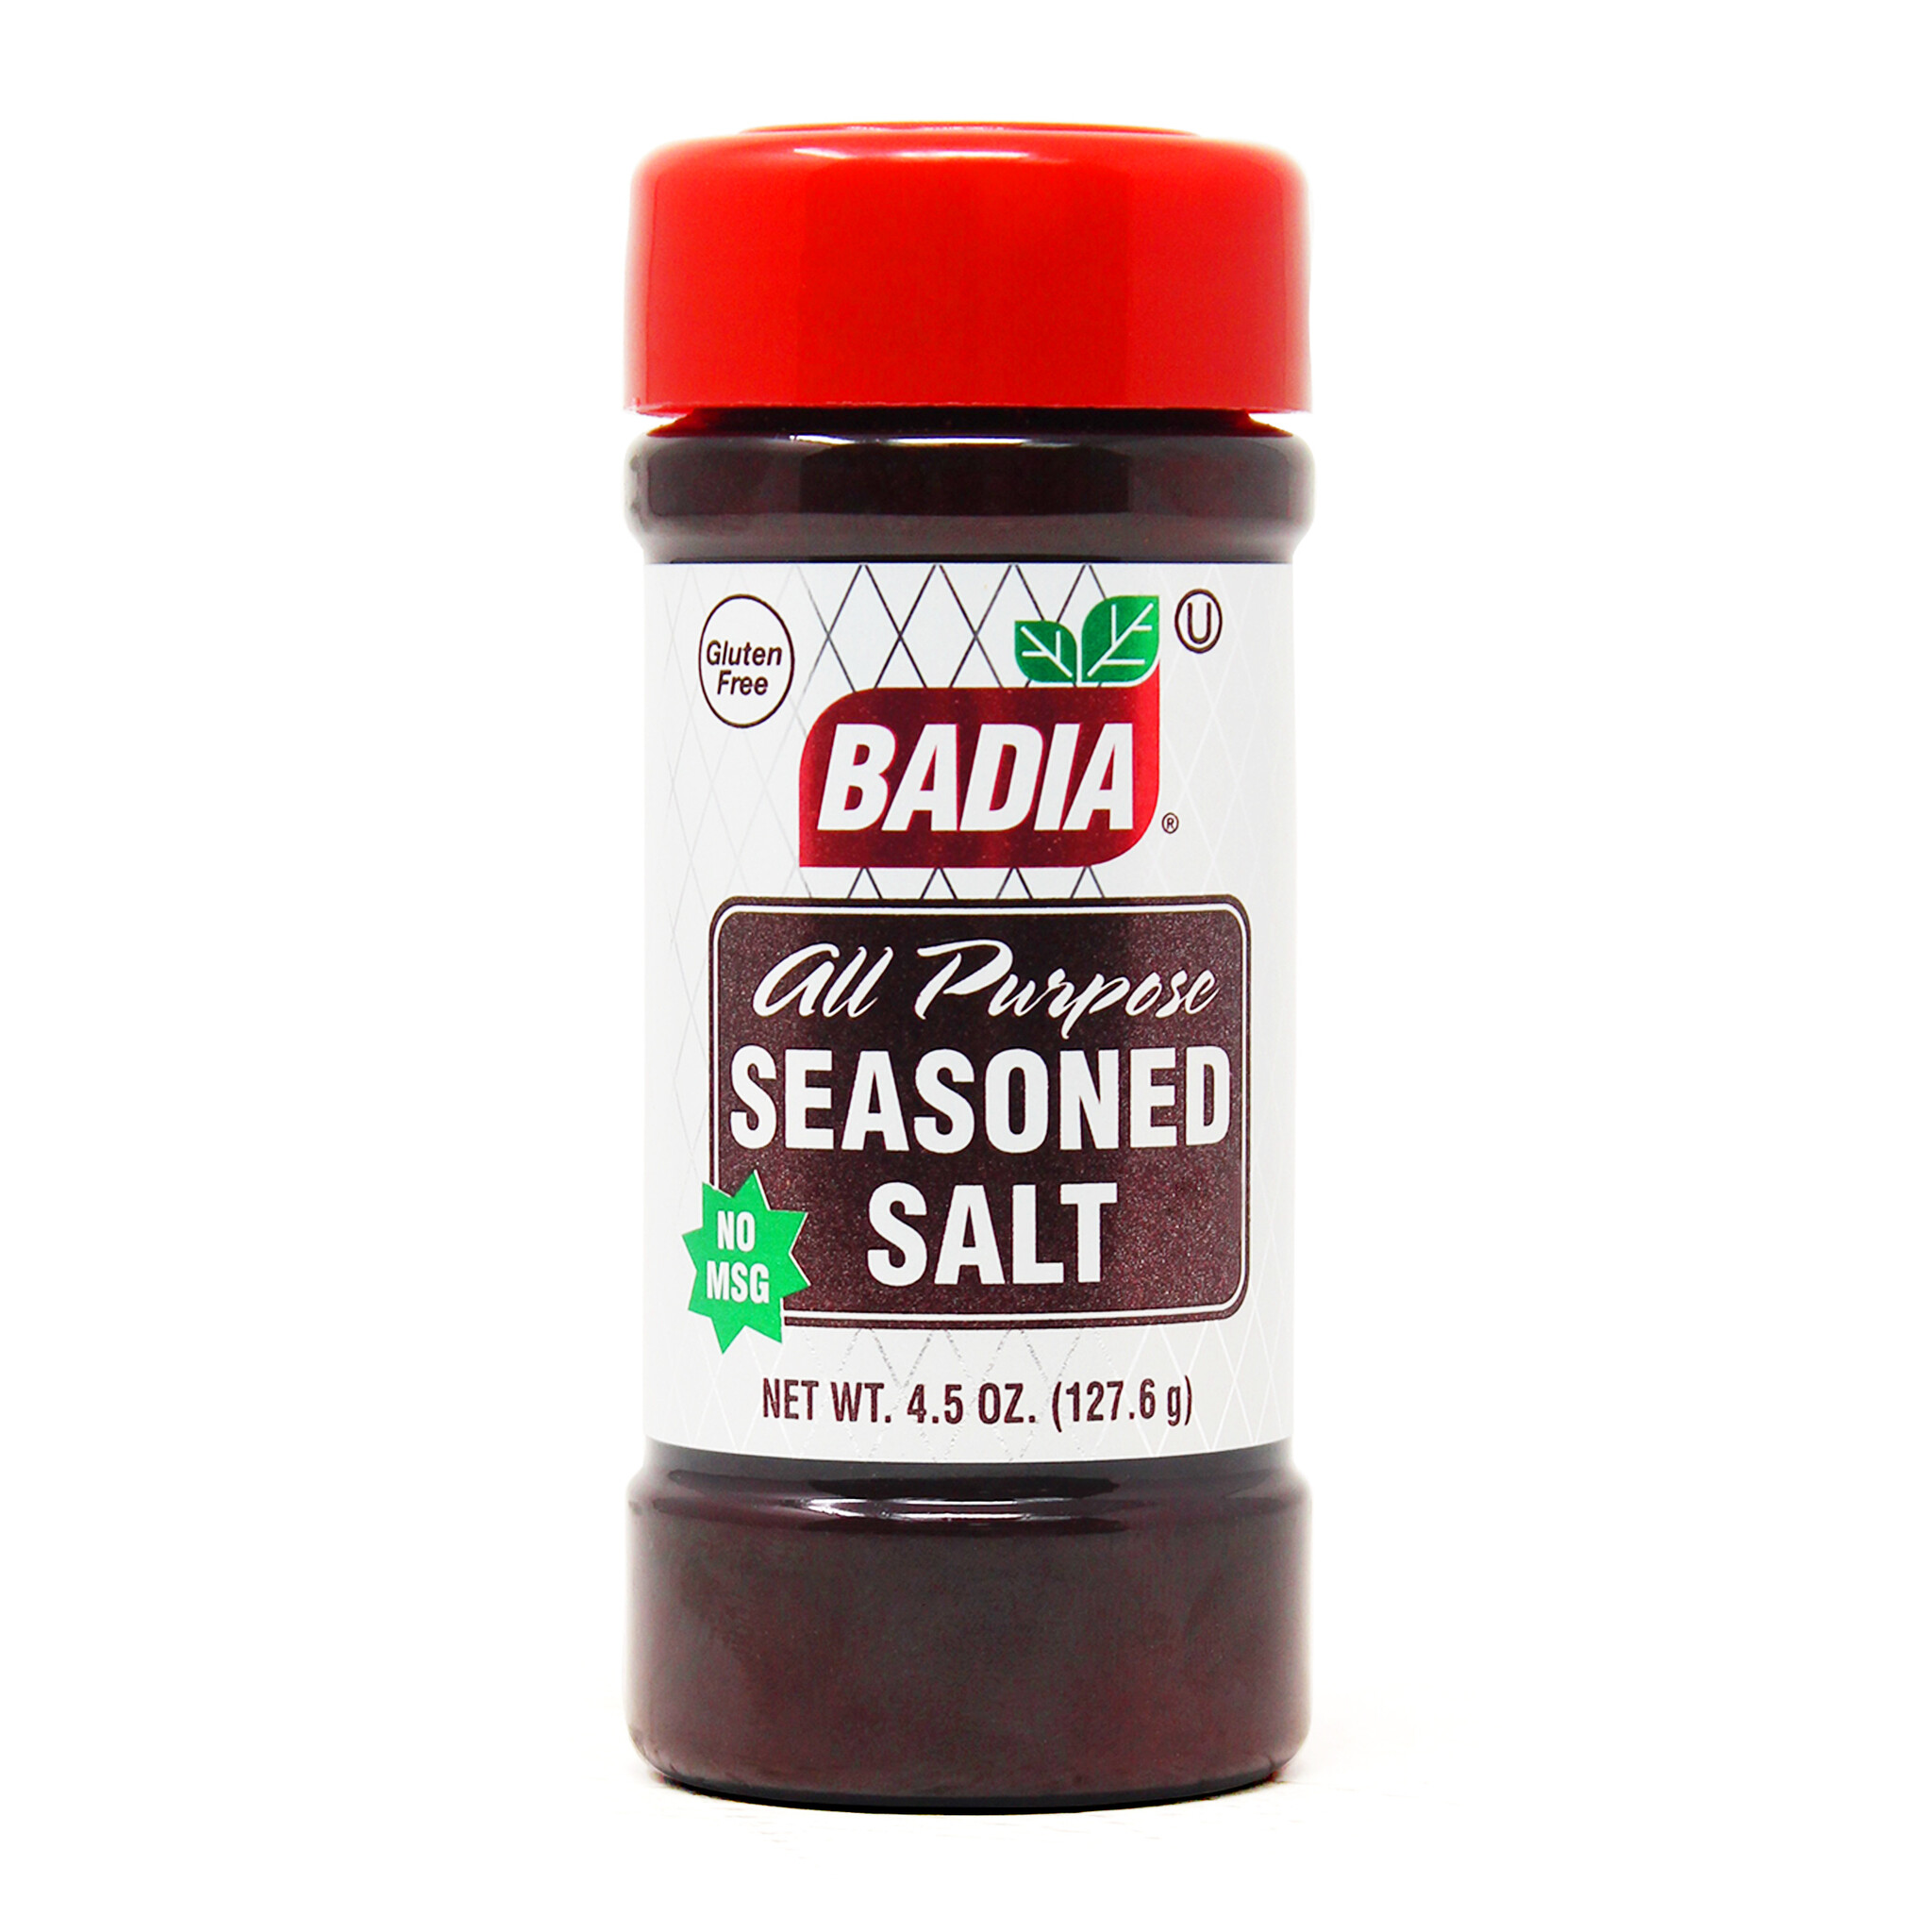 Badia Collard Greens Seasoning - 6 oz btl